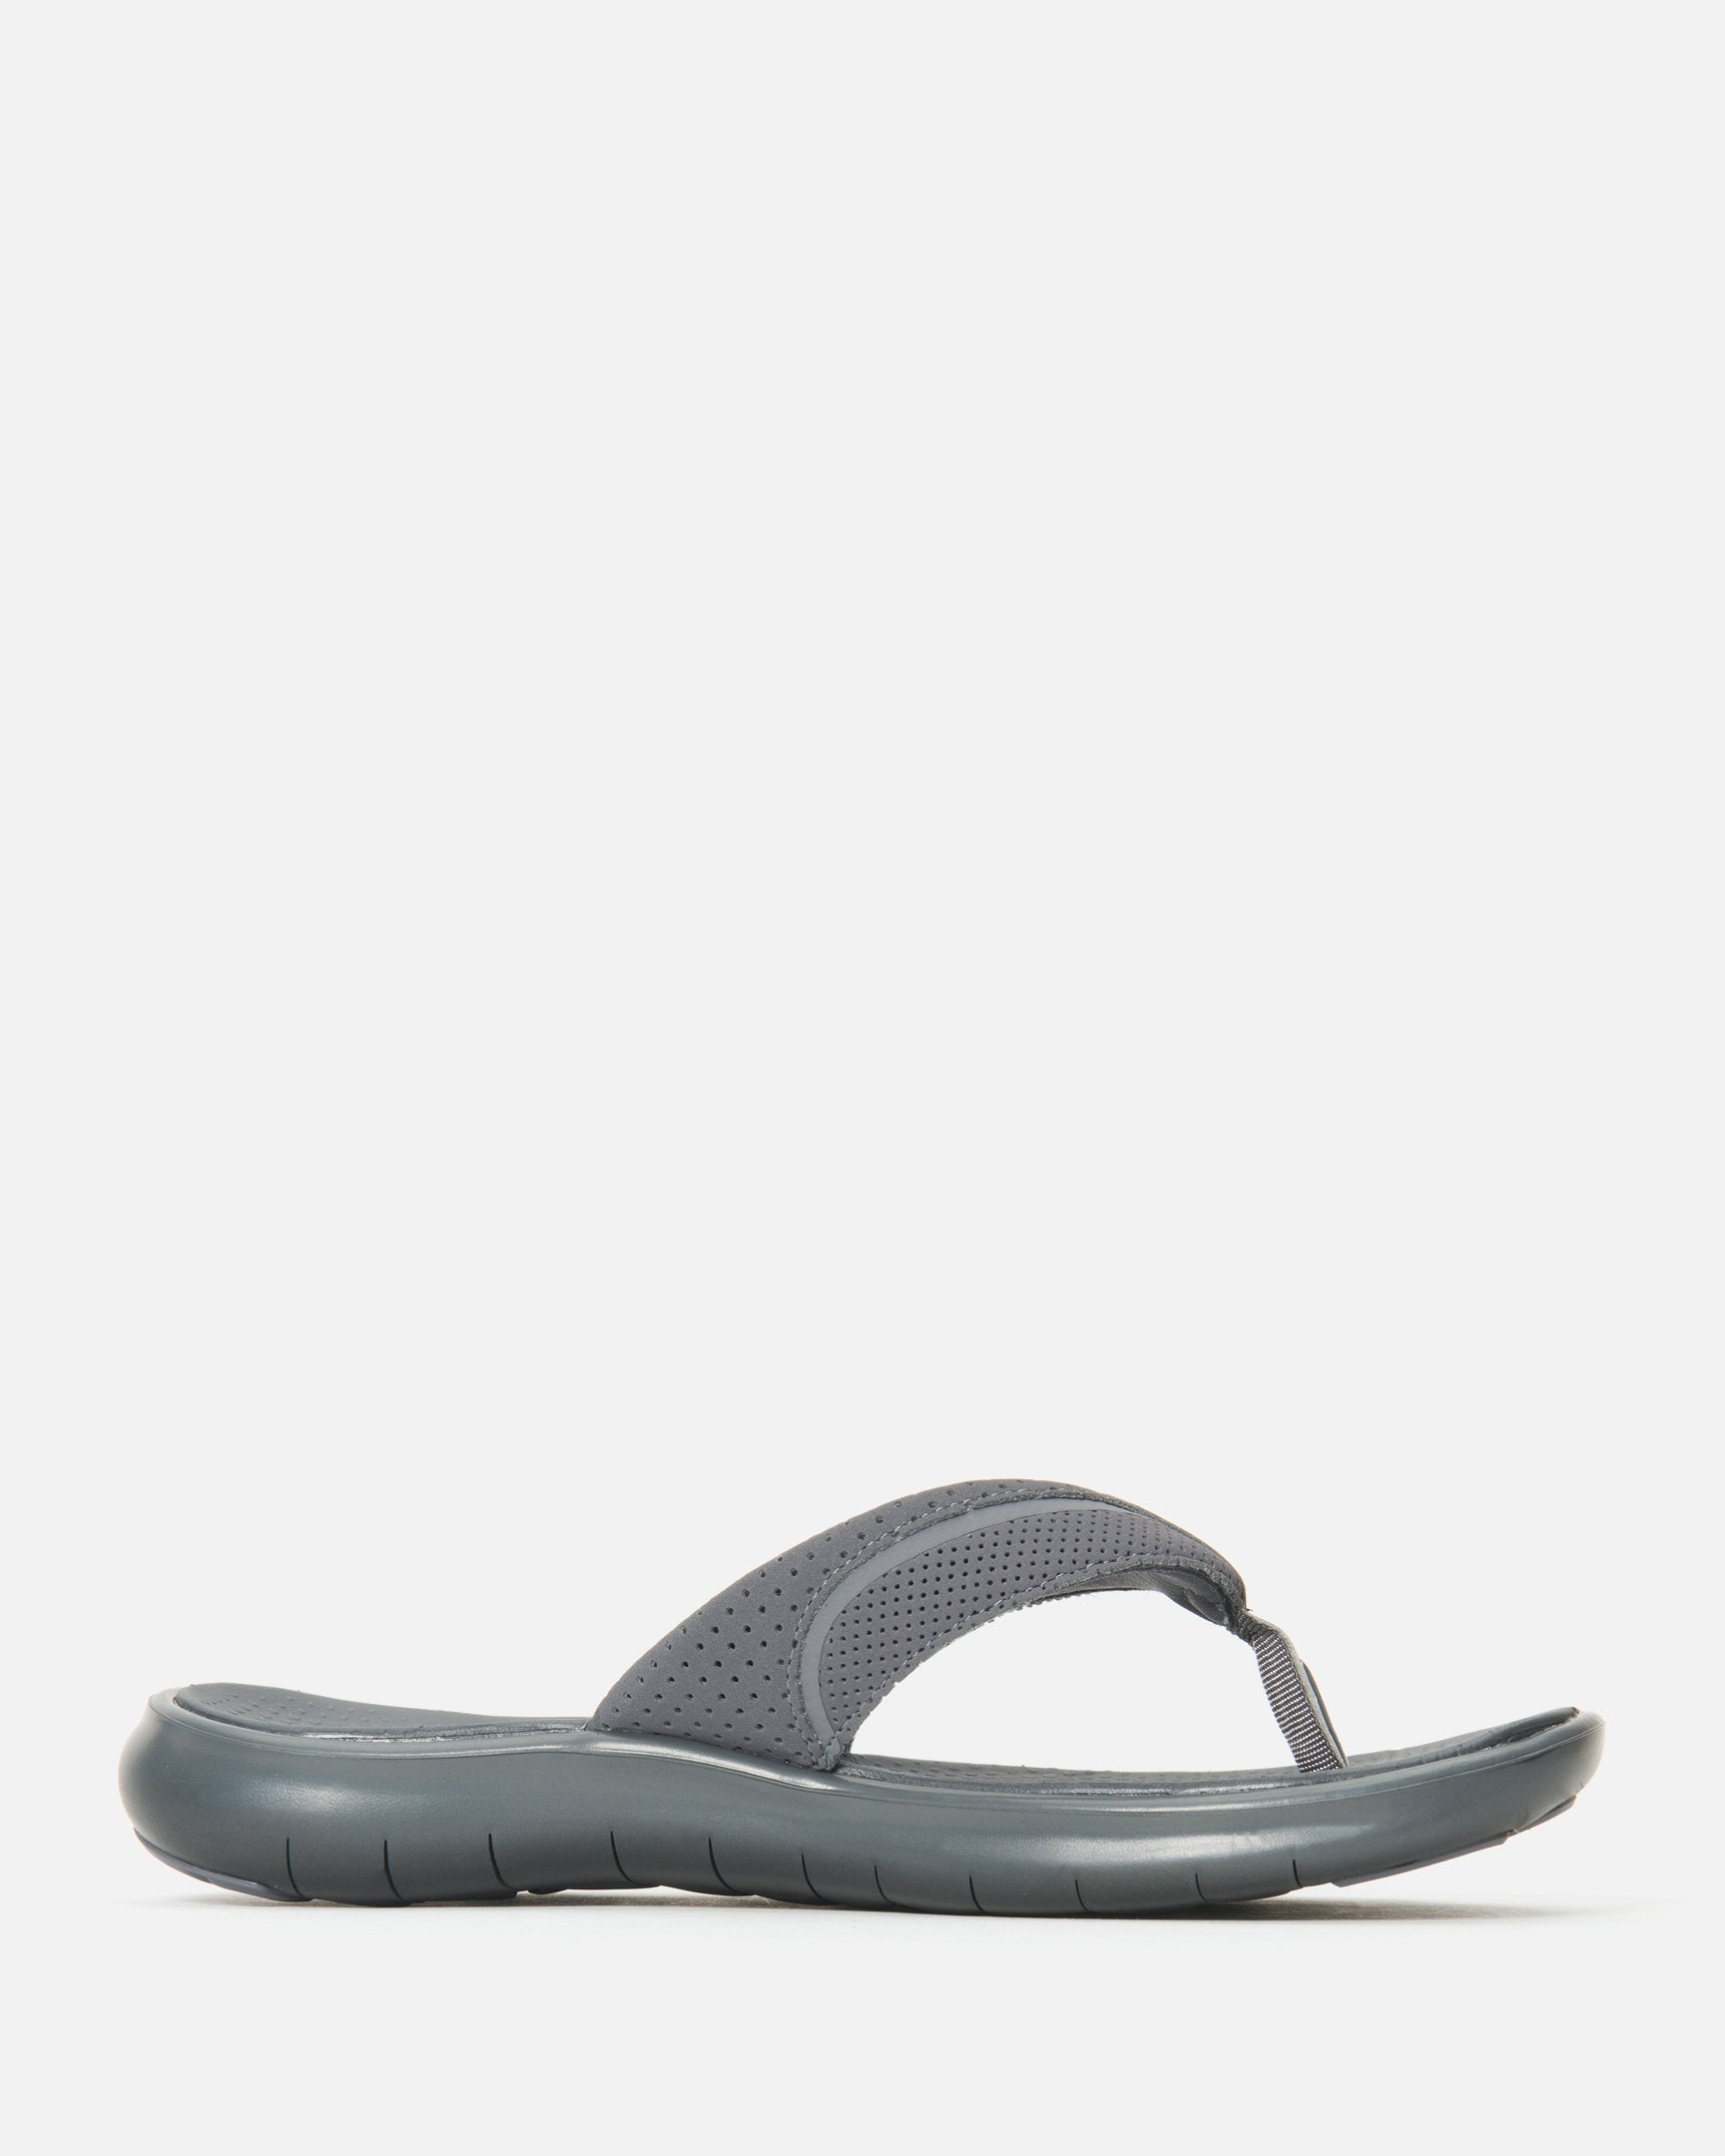 hurley flex sandal